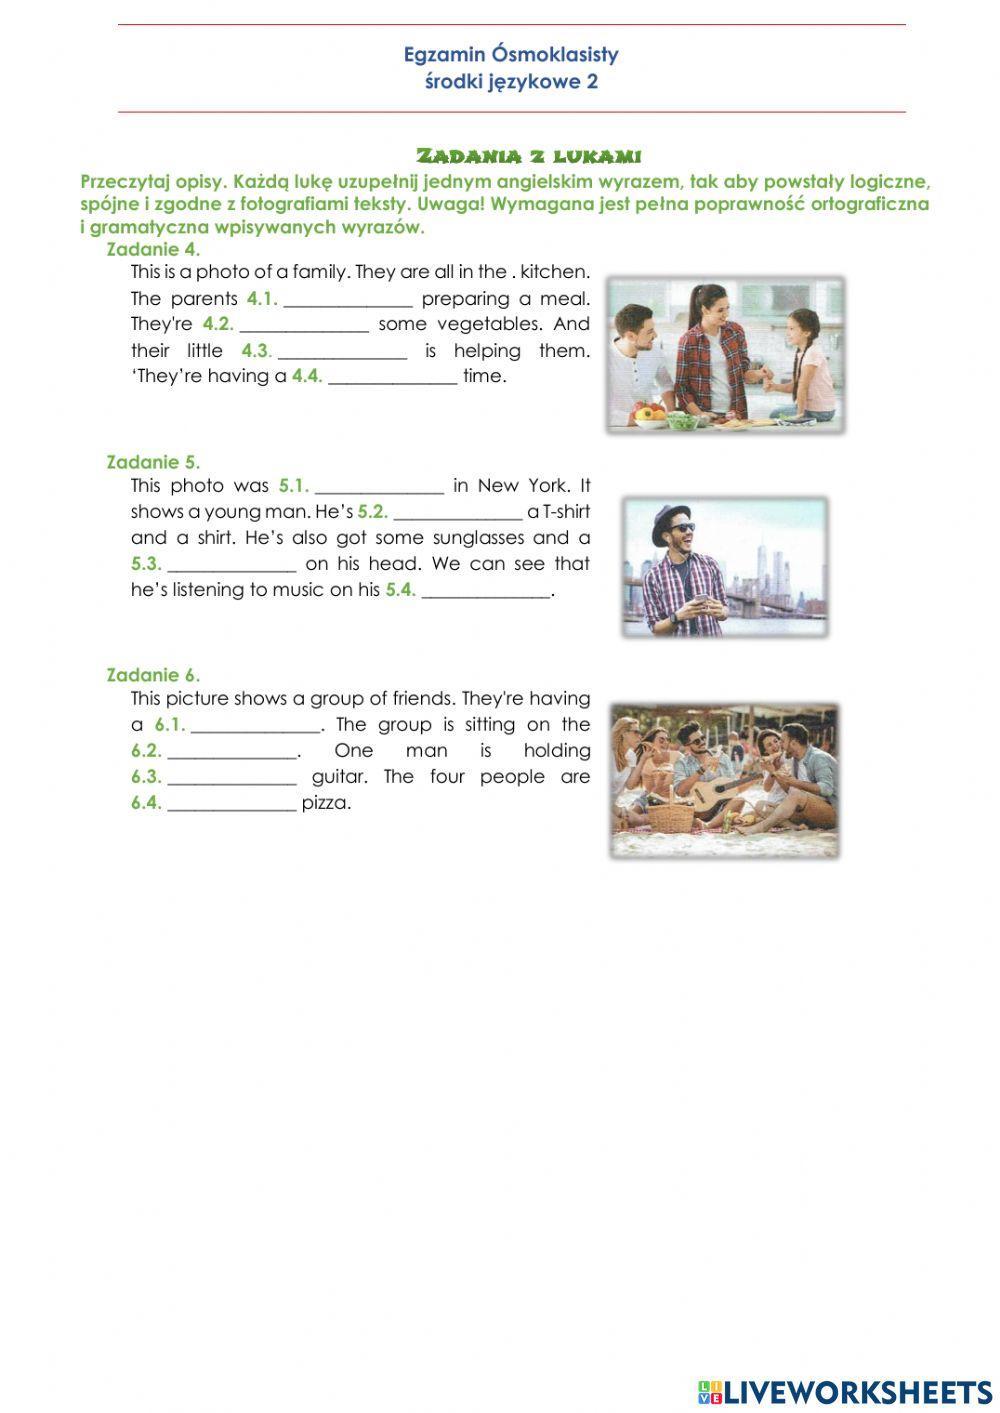 E8 Środki językowe - zadania z lukami 2